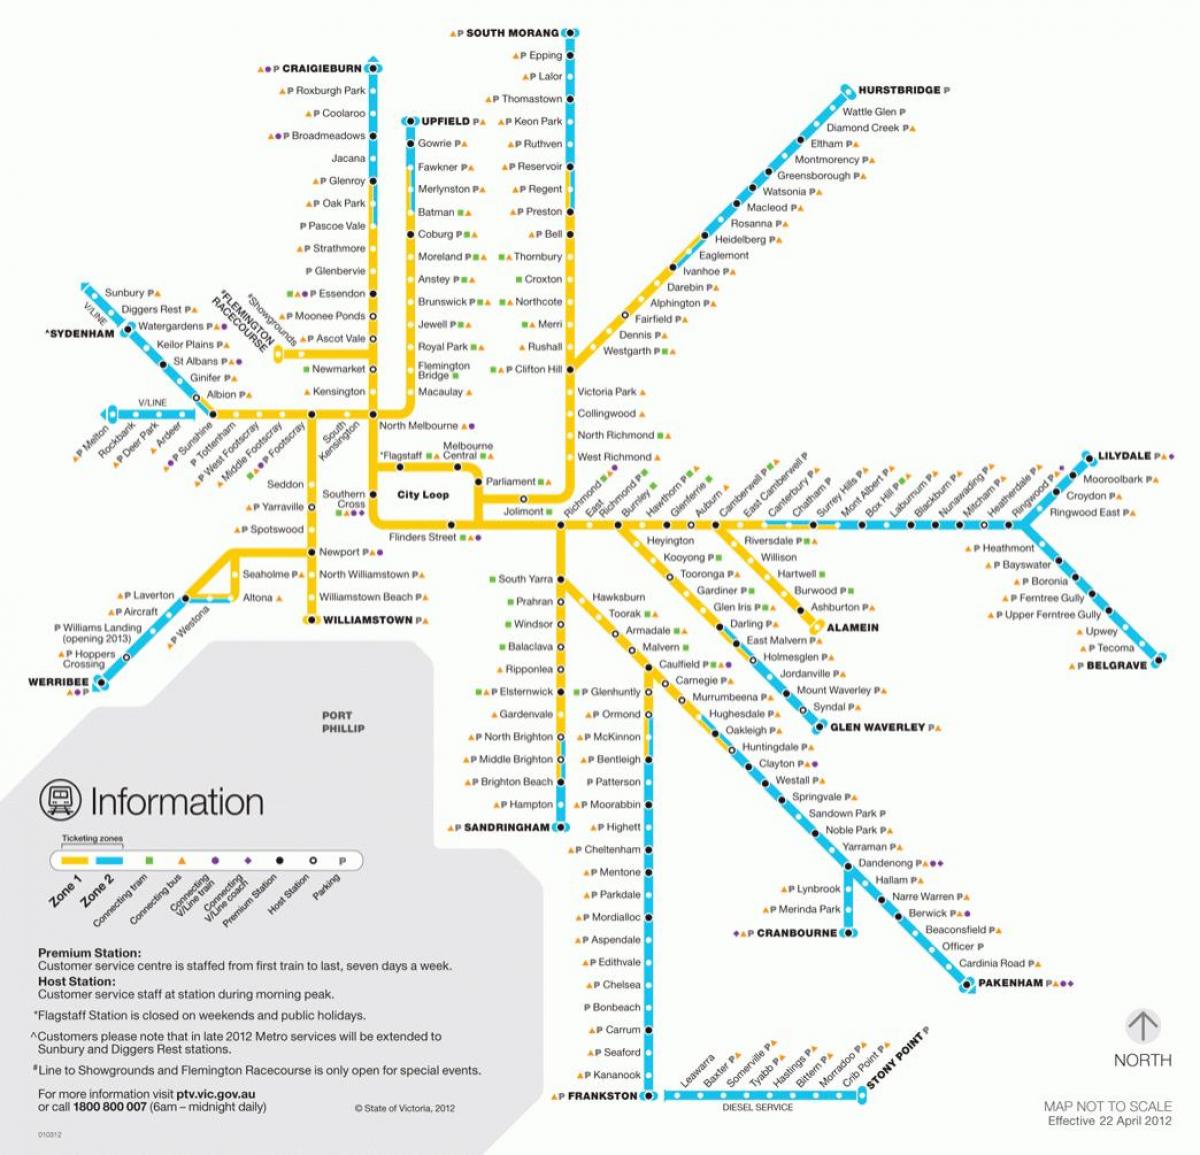 Mappa delle stazioni della metropolitana di Melbourne